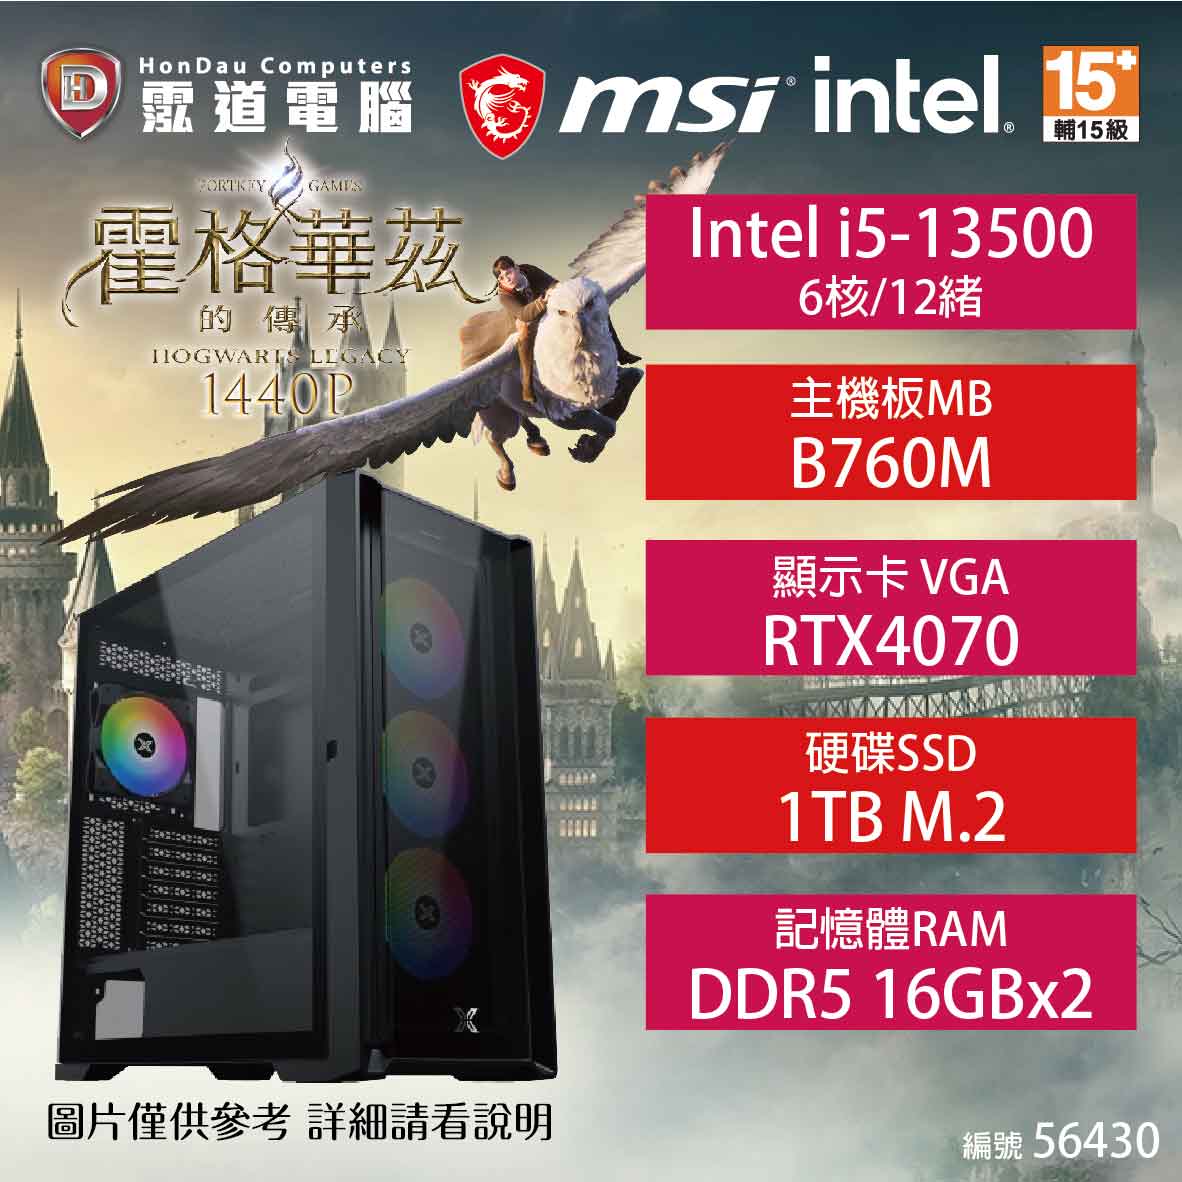 【hd數位3c】【電競機】Intel 霍格華茲的傳承-1440P 電競機 i5-13500/B760M/RTX4070/16GB*2/1TB/750W(56430) 0